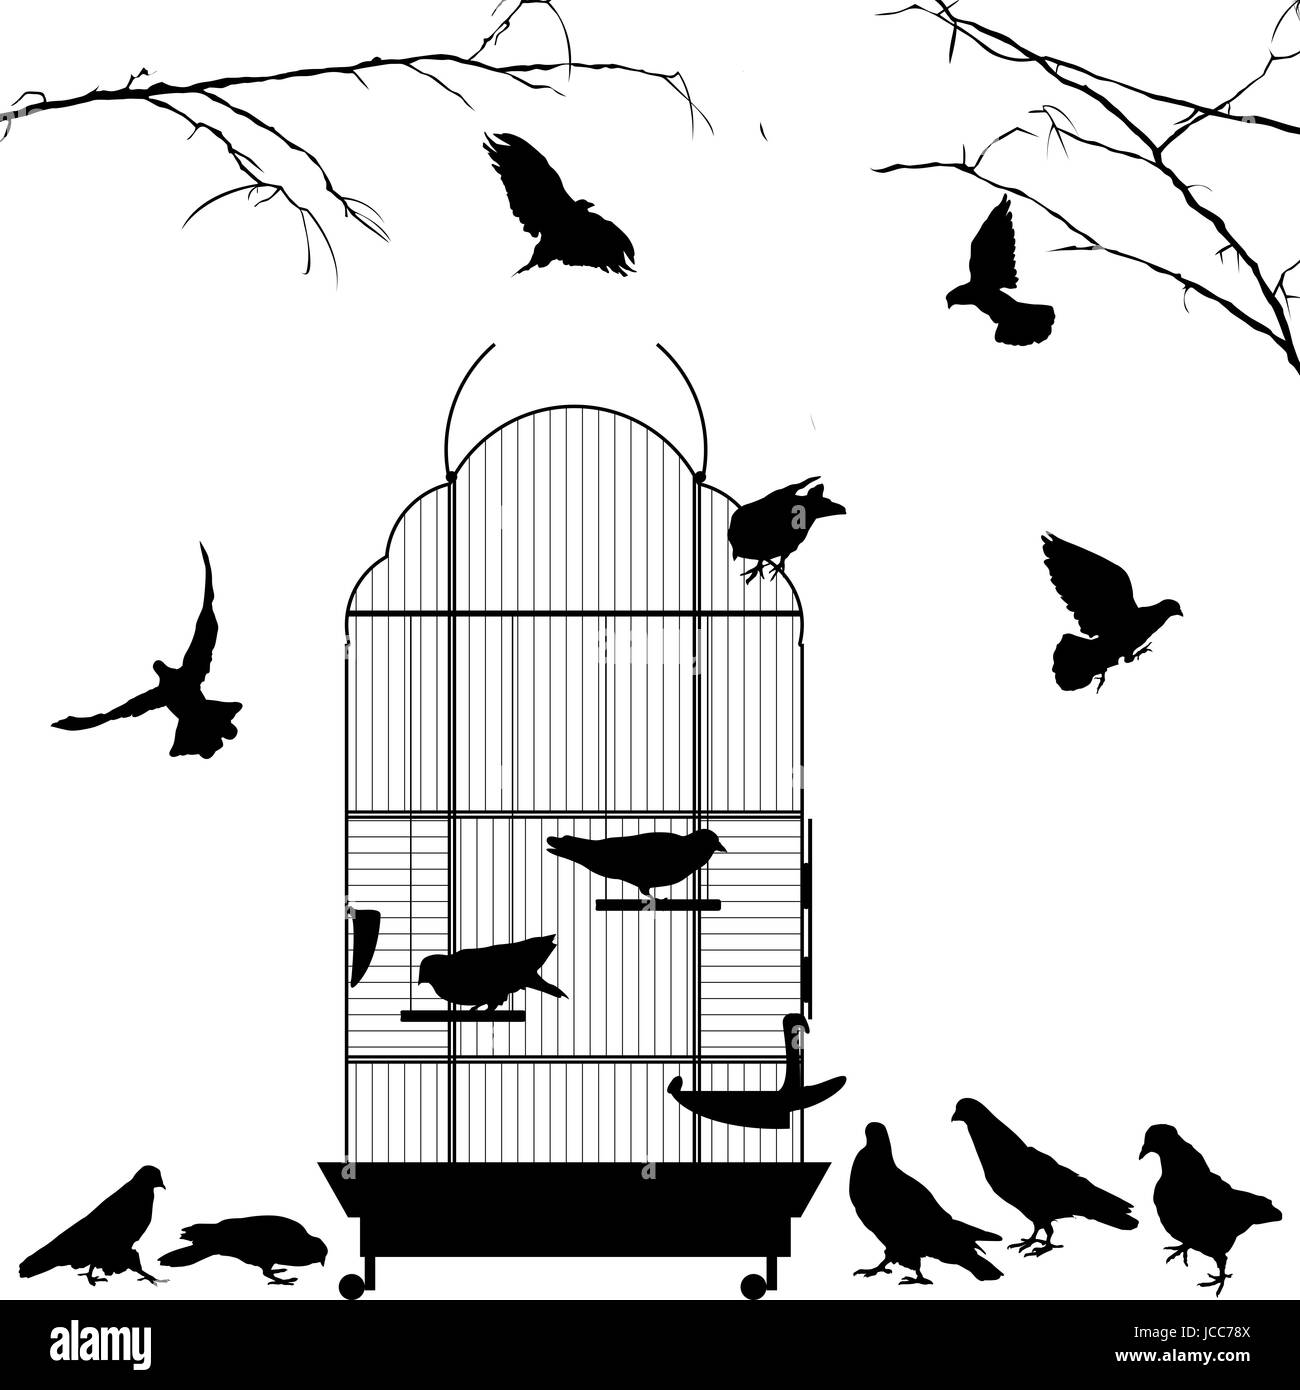 Offenen Vogelkäfig und Vögel Silhouetten auf weißem Hintergrund Stockfoto